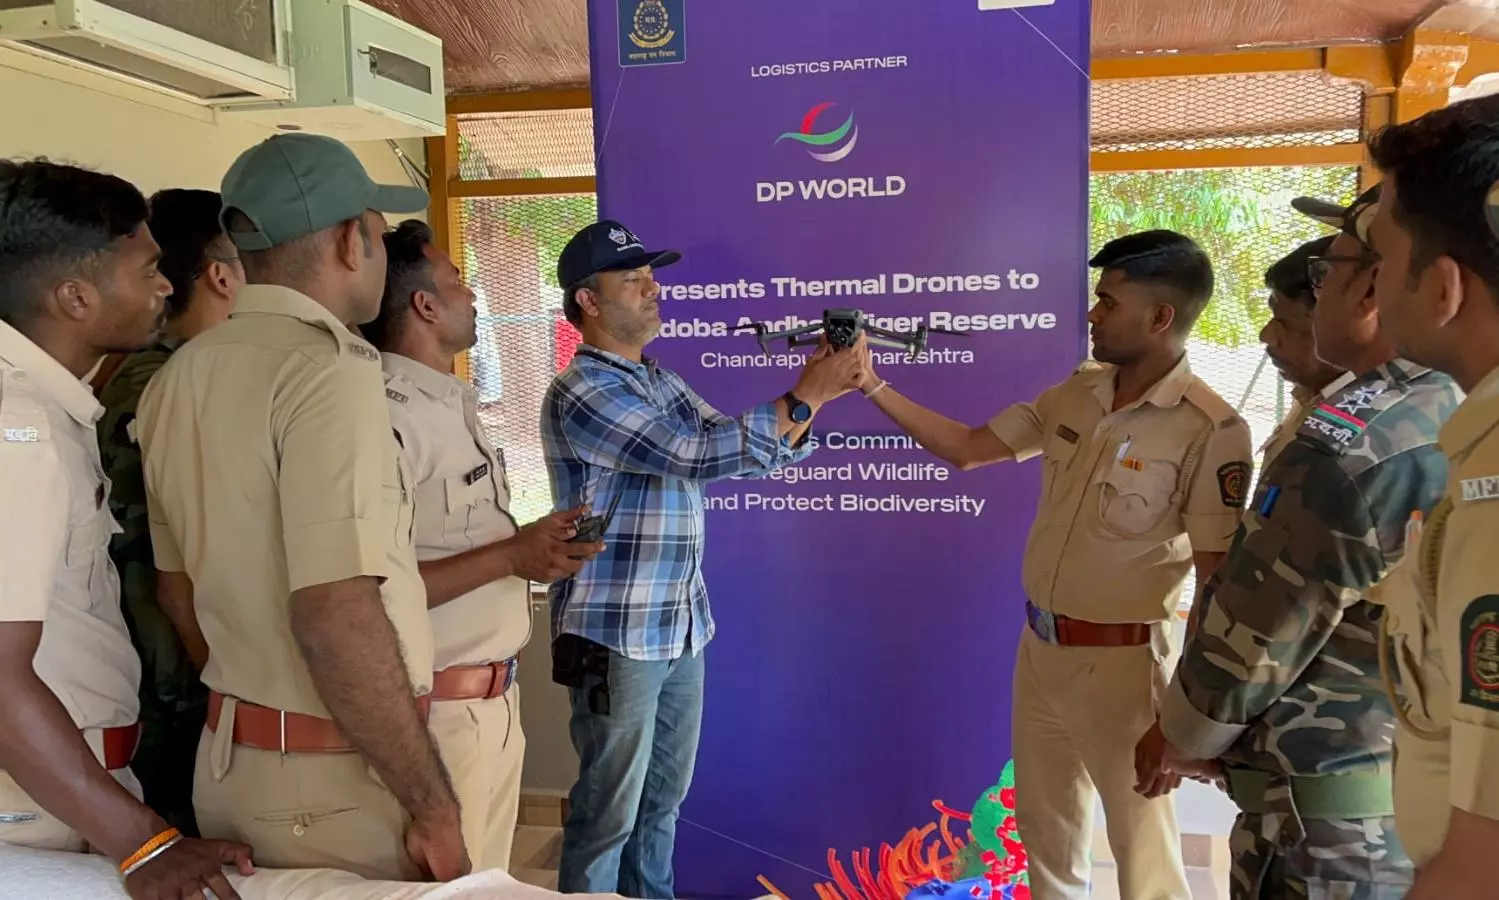 DP World provides thermal drones to Tadoba-Andhari Tiger Reserve